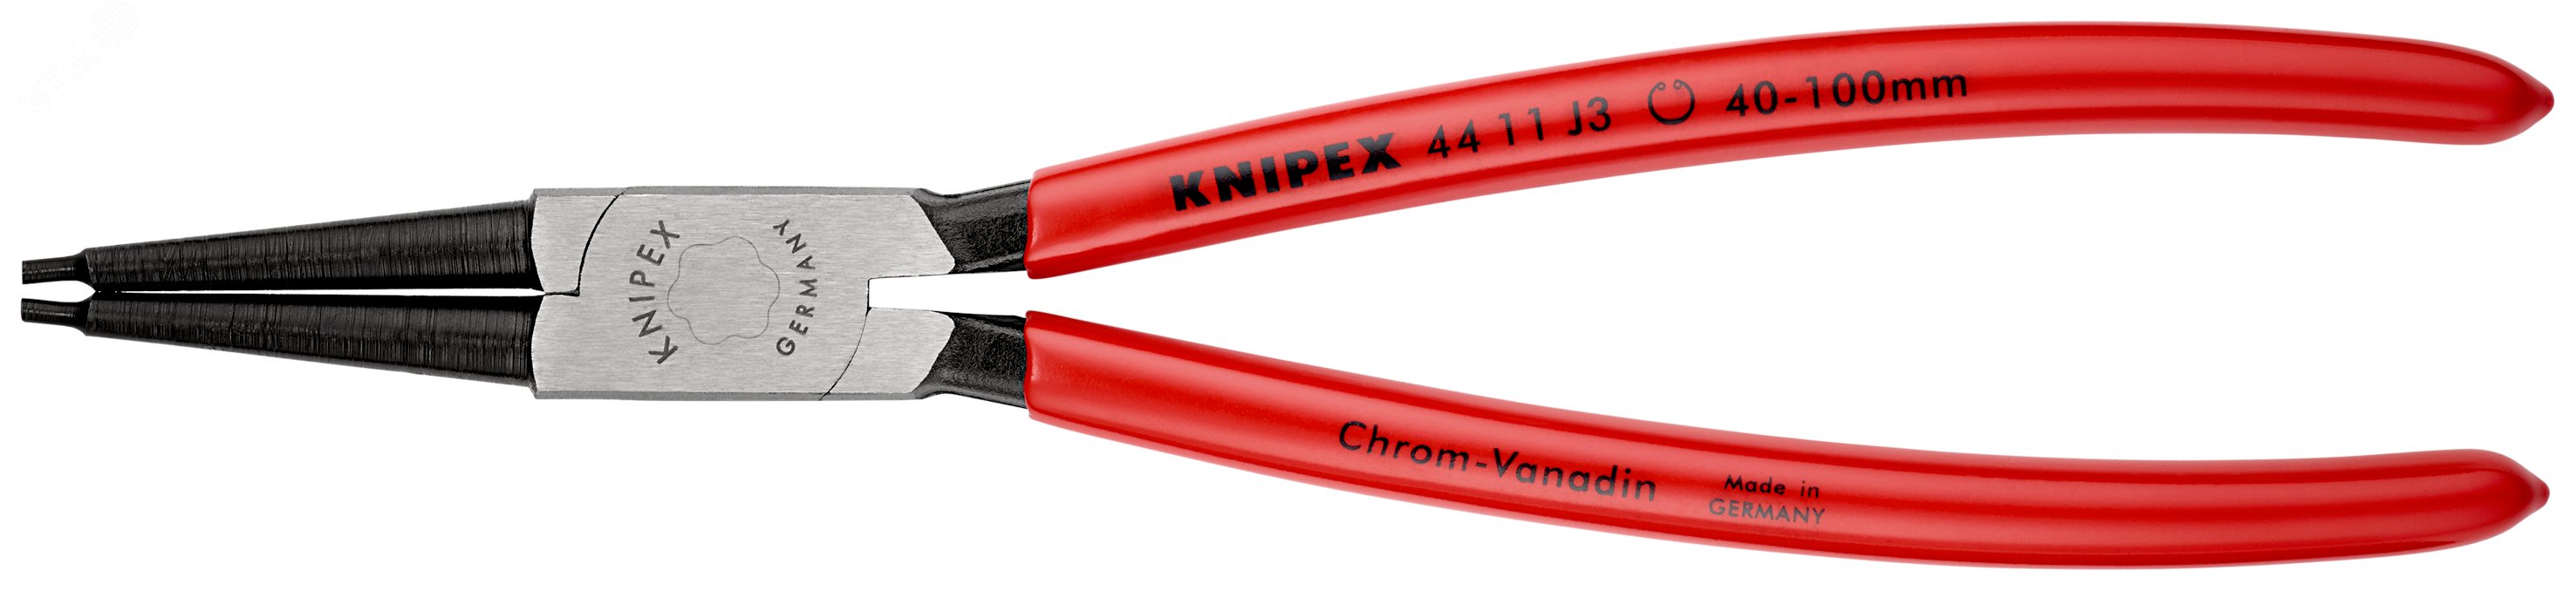 Щипцы для внутренних стопорных колец прямые губки посадочный размер 40-100мм диаметр наконечников 23мм L=225мм Cr-V обливные рукоятки блистер цвет черный KN-4411J3SB KNIPEX - превью 3